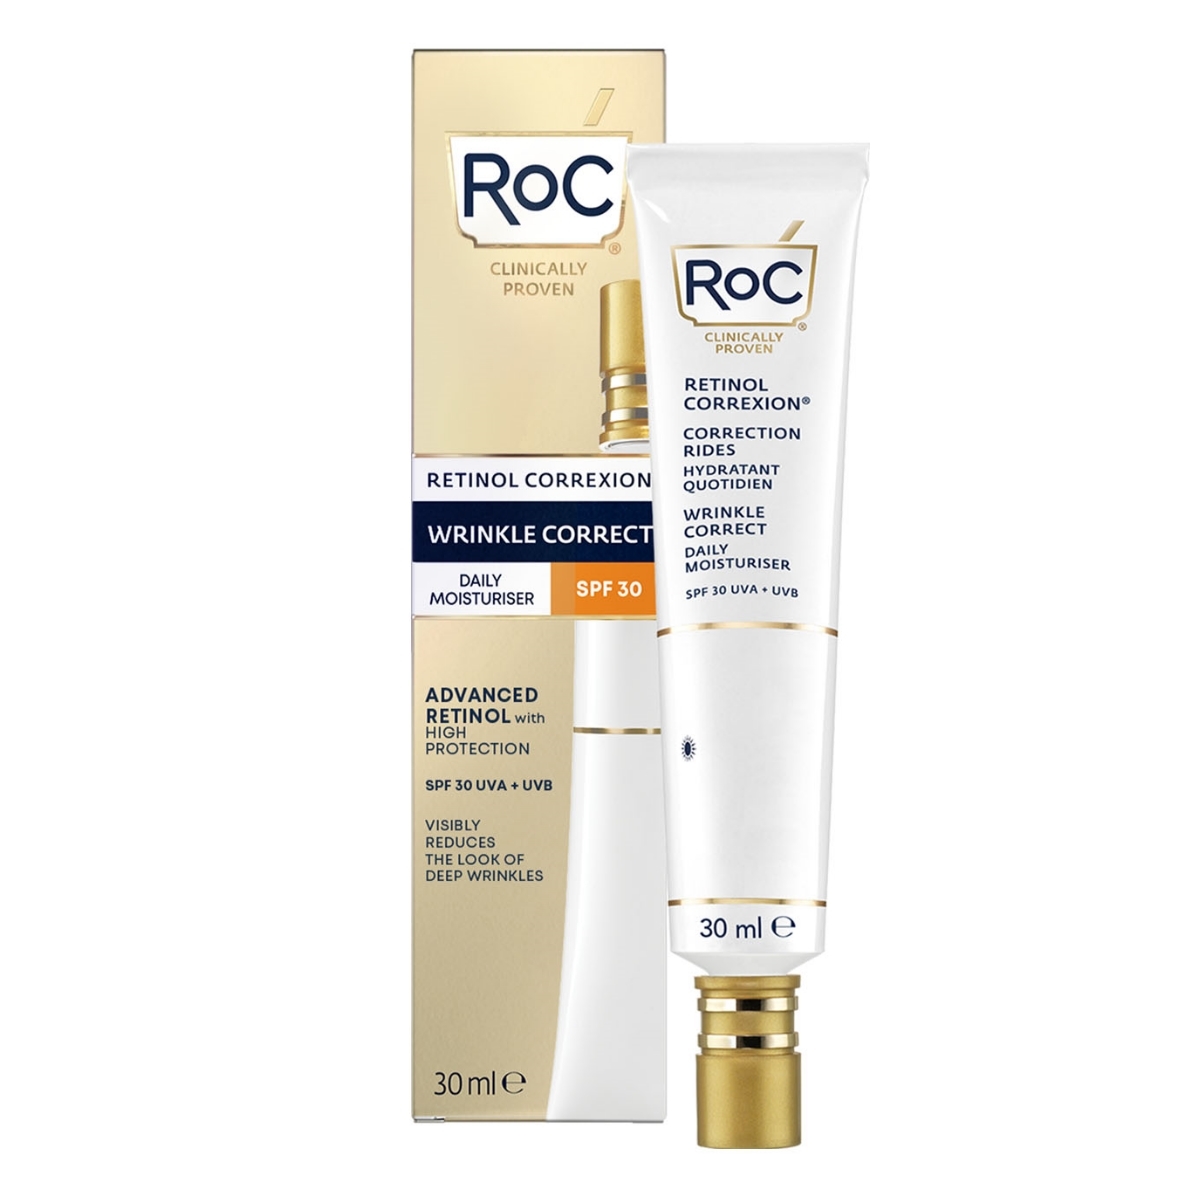 Crema Hidratante de Día SPF 30 Retinol Correxion Wrinkle Correct de RoC.